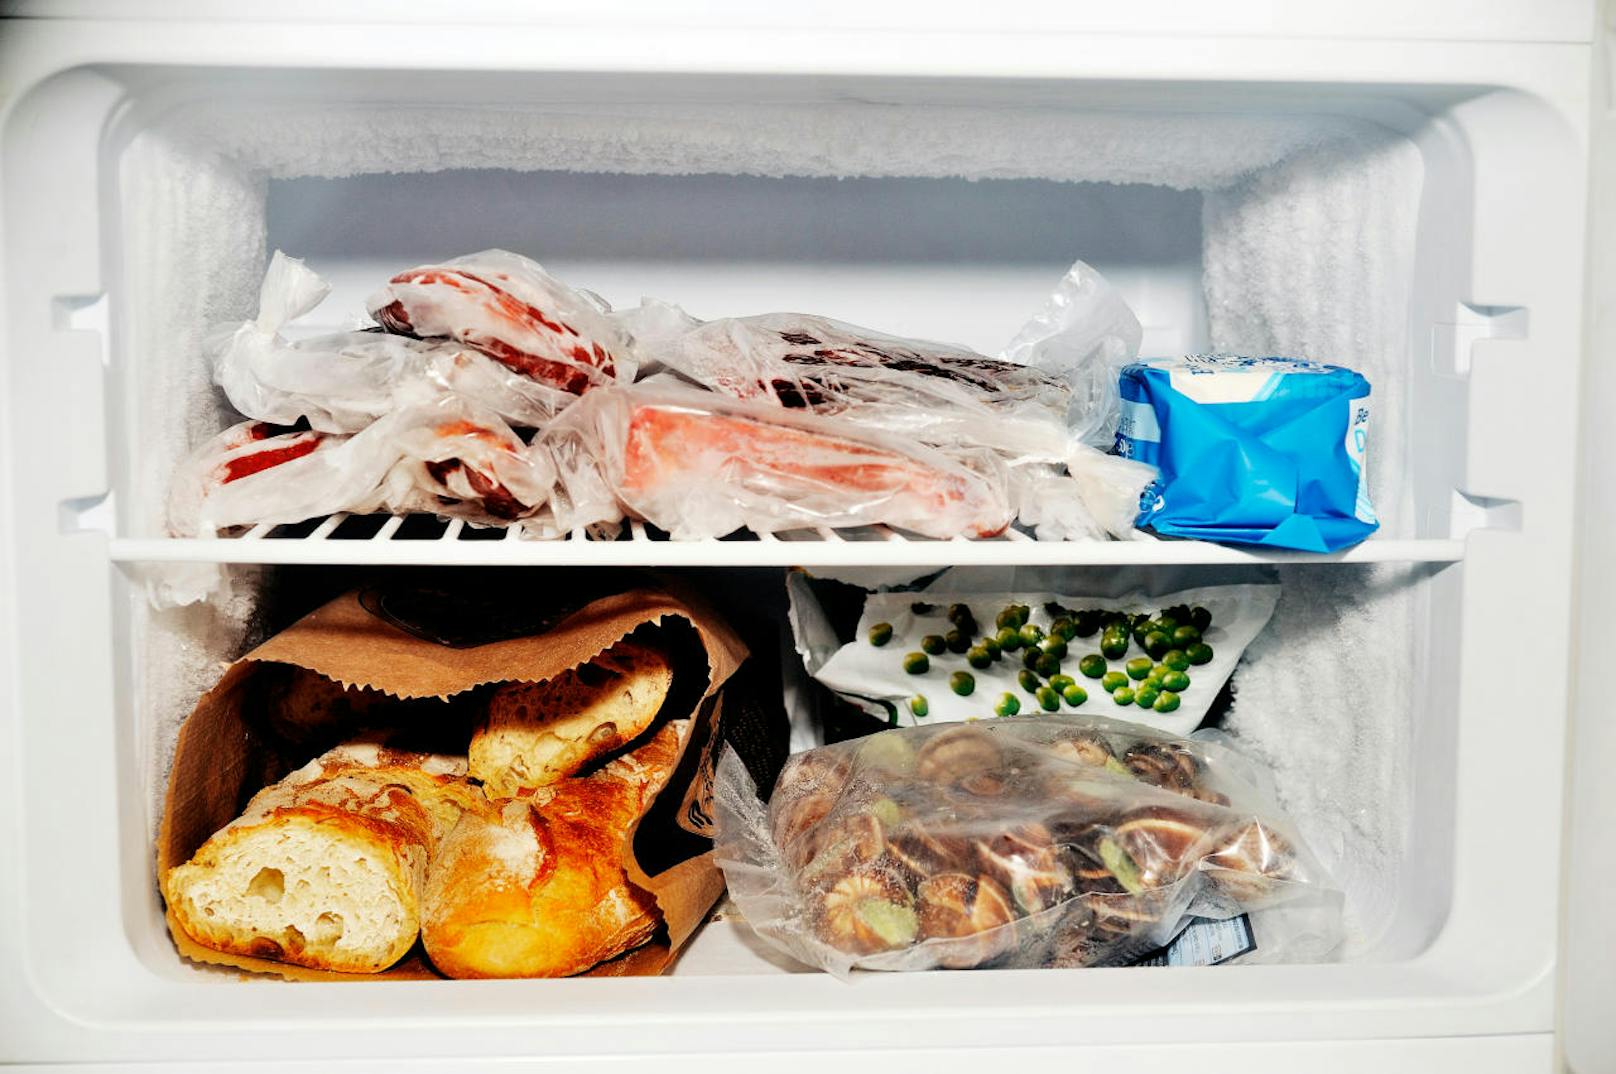 <b>Punkt 5: Vorräte.</b> Auch wenn Sie den Kühlschrank ausräumen, sind Sie wahrscheinlich froh, wenn bei Ihrer Rückkehr etwas Essbares da ist. Brot und Butter lassen sich wunderbar tiefkühlen.